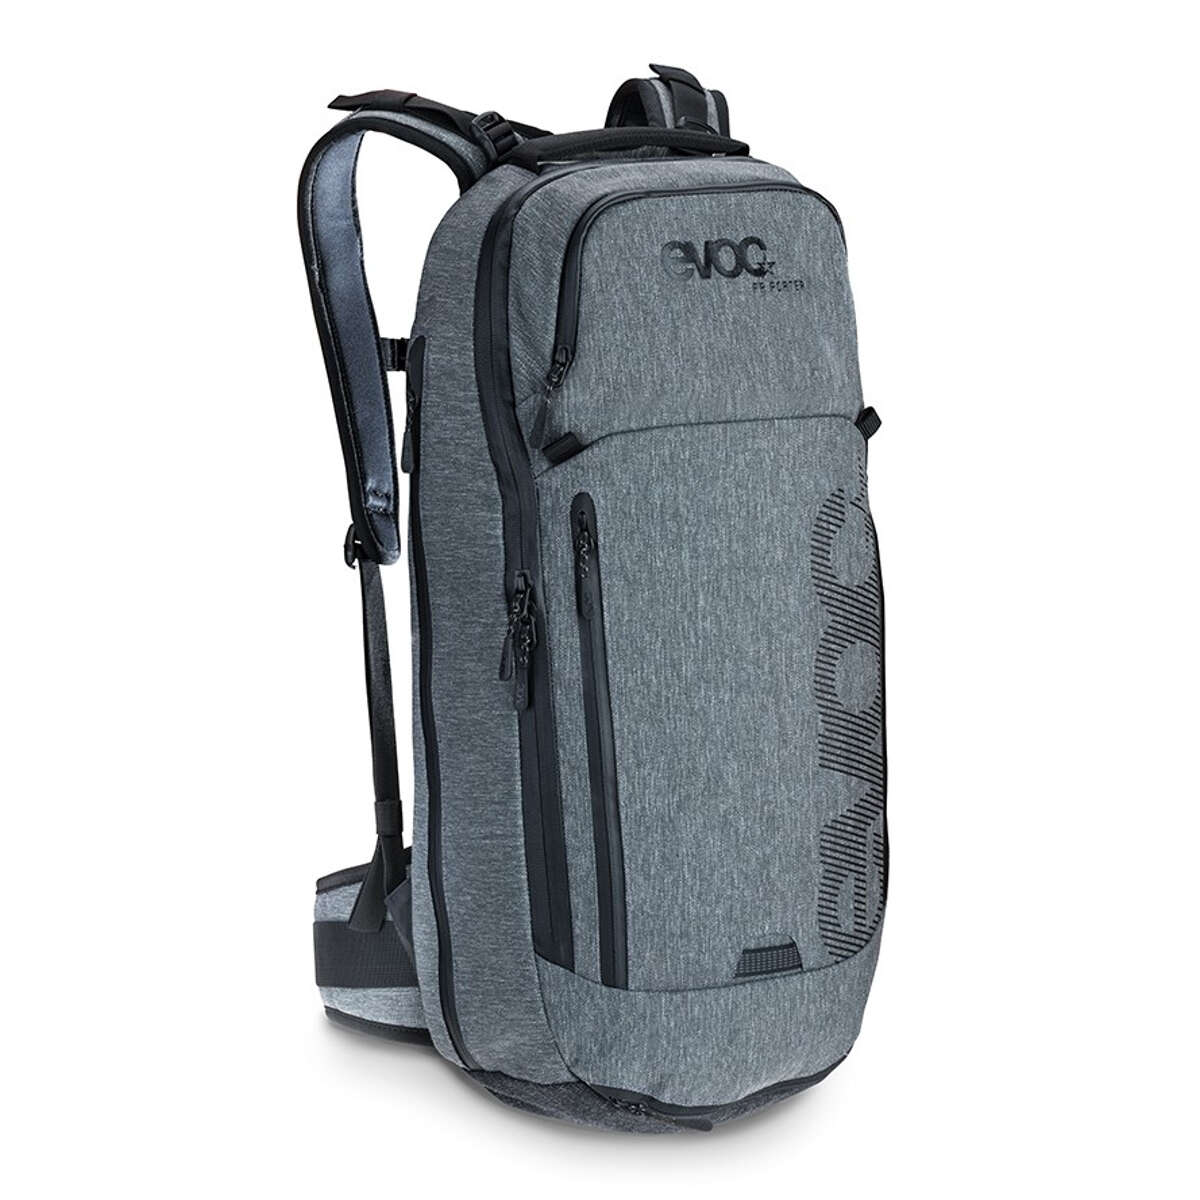 Evoc Protector Backpack FR Porter GreyHeather, 18 Liter